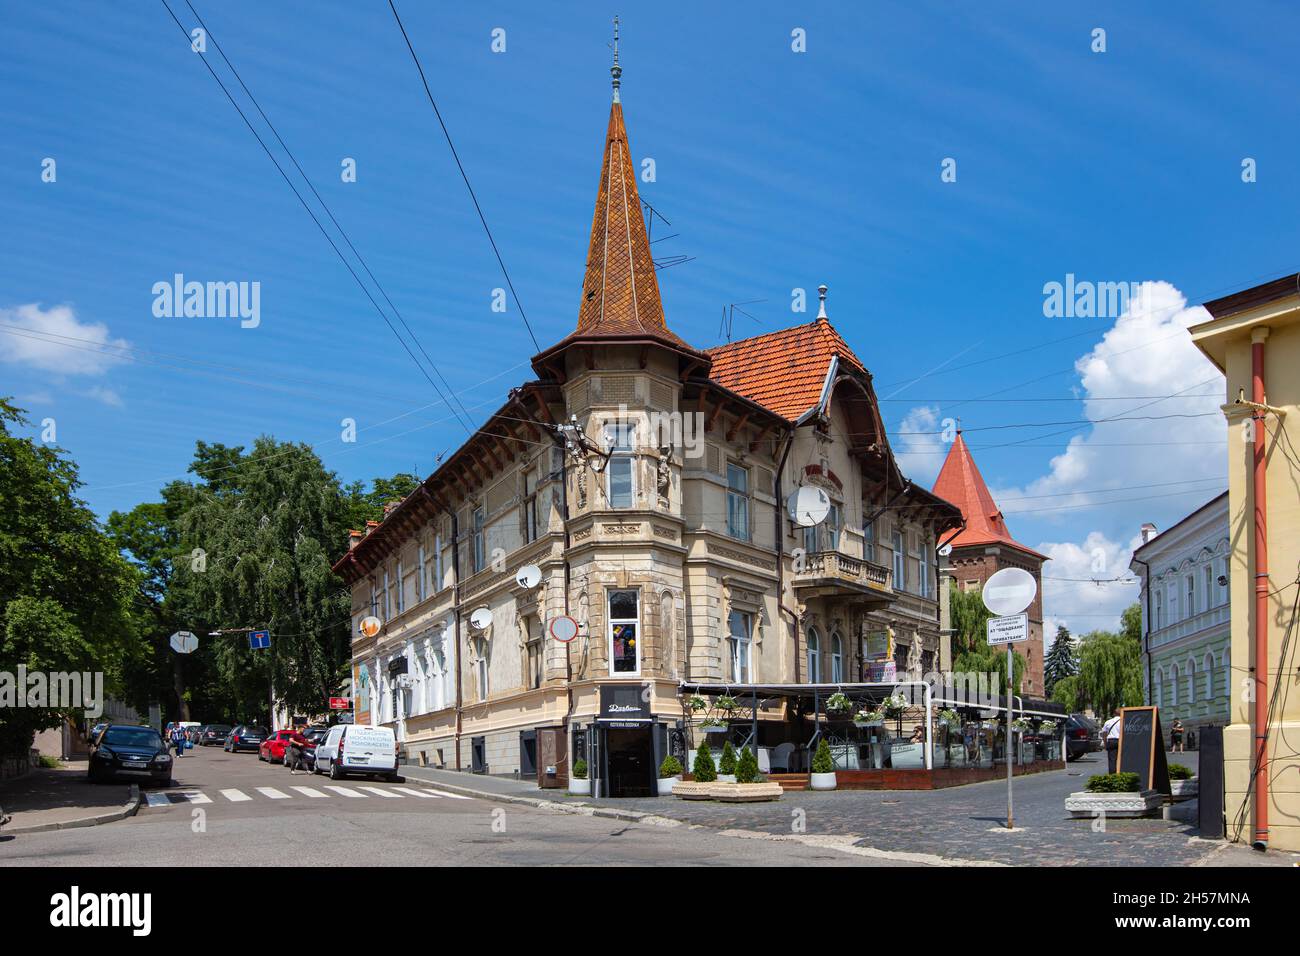 Drohobych, Ukraine - July 2021: A historic building in Drohobych, Ukraine Stock Photo